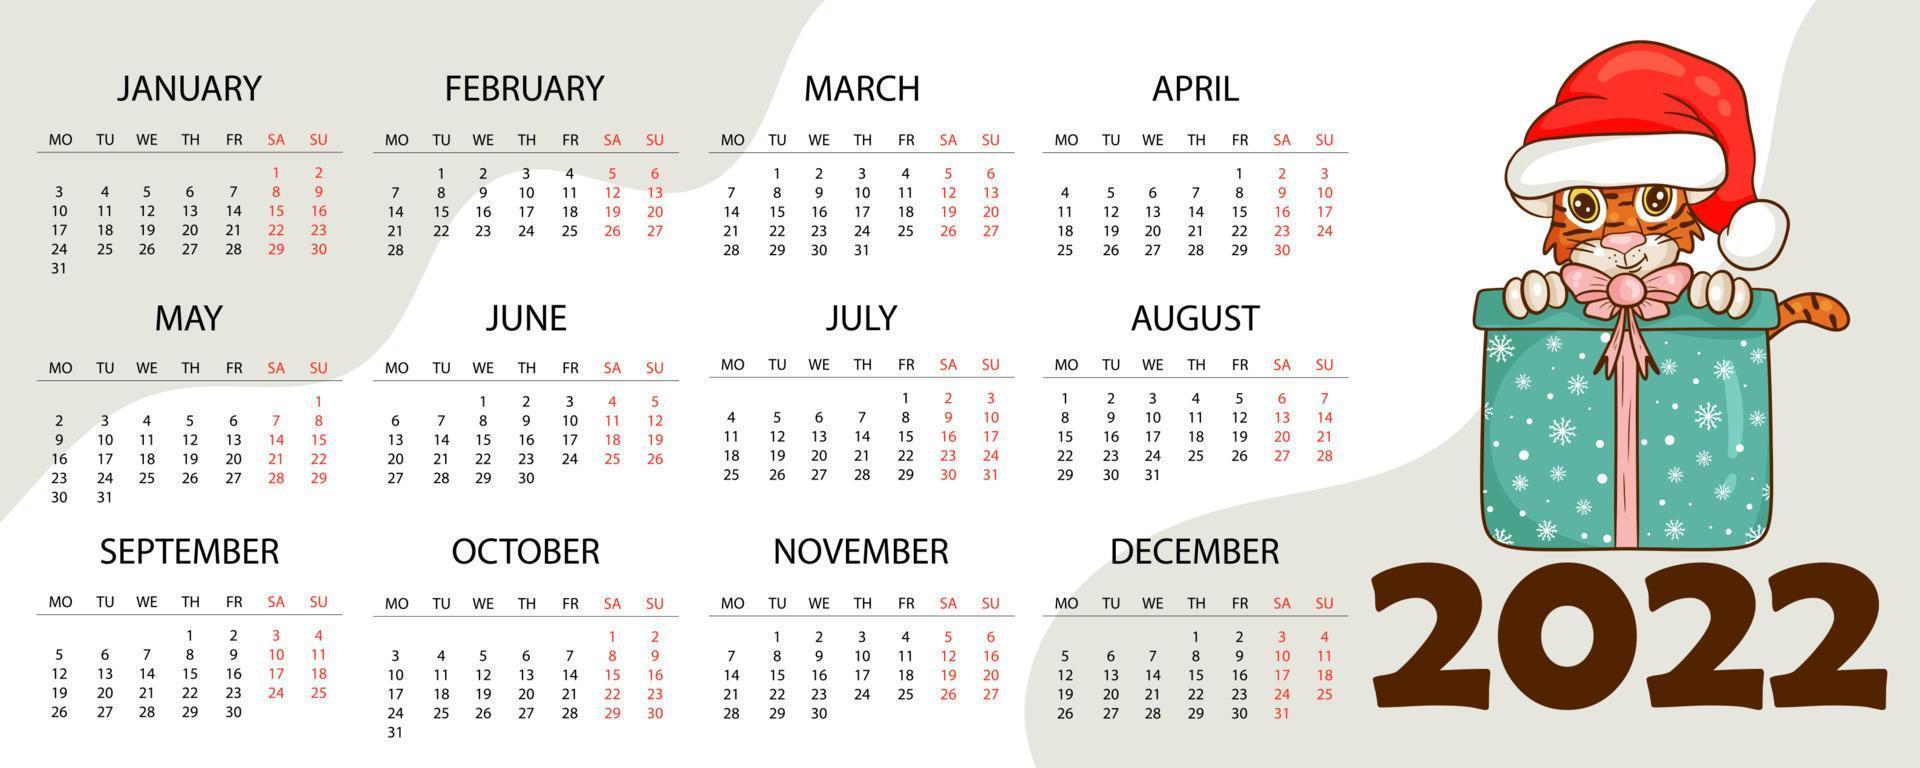 kalendermall för 2022, tigerns år enligt den kinesiska eller östra kalendern, med en illustration av tigern. horisontellt bord med kalender för 2022. vektor